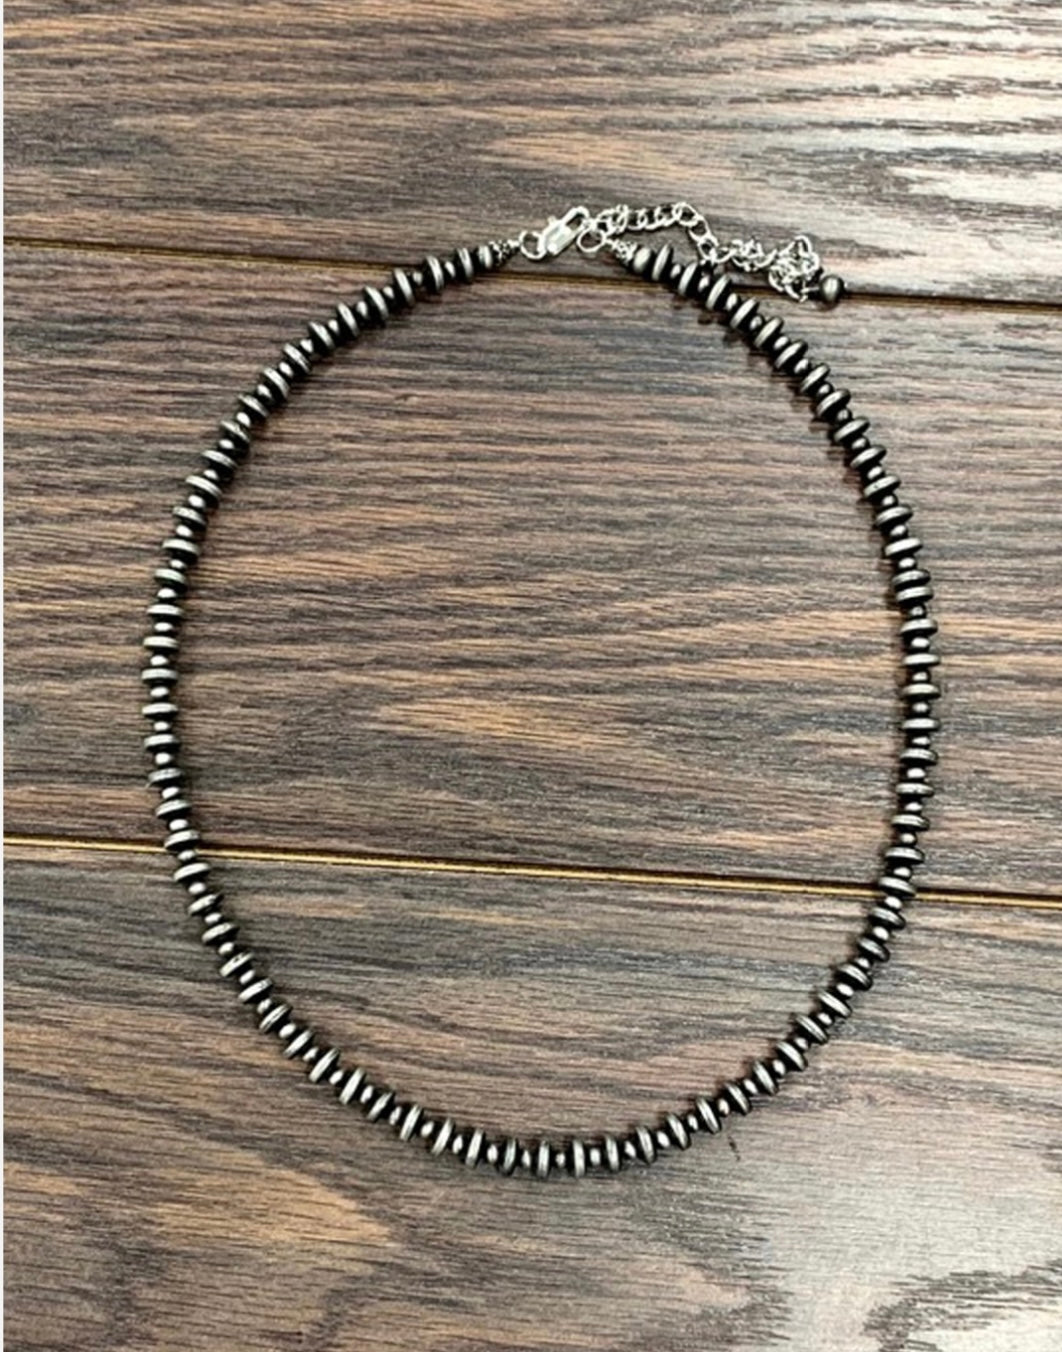 Navajo Short Necklace